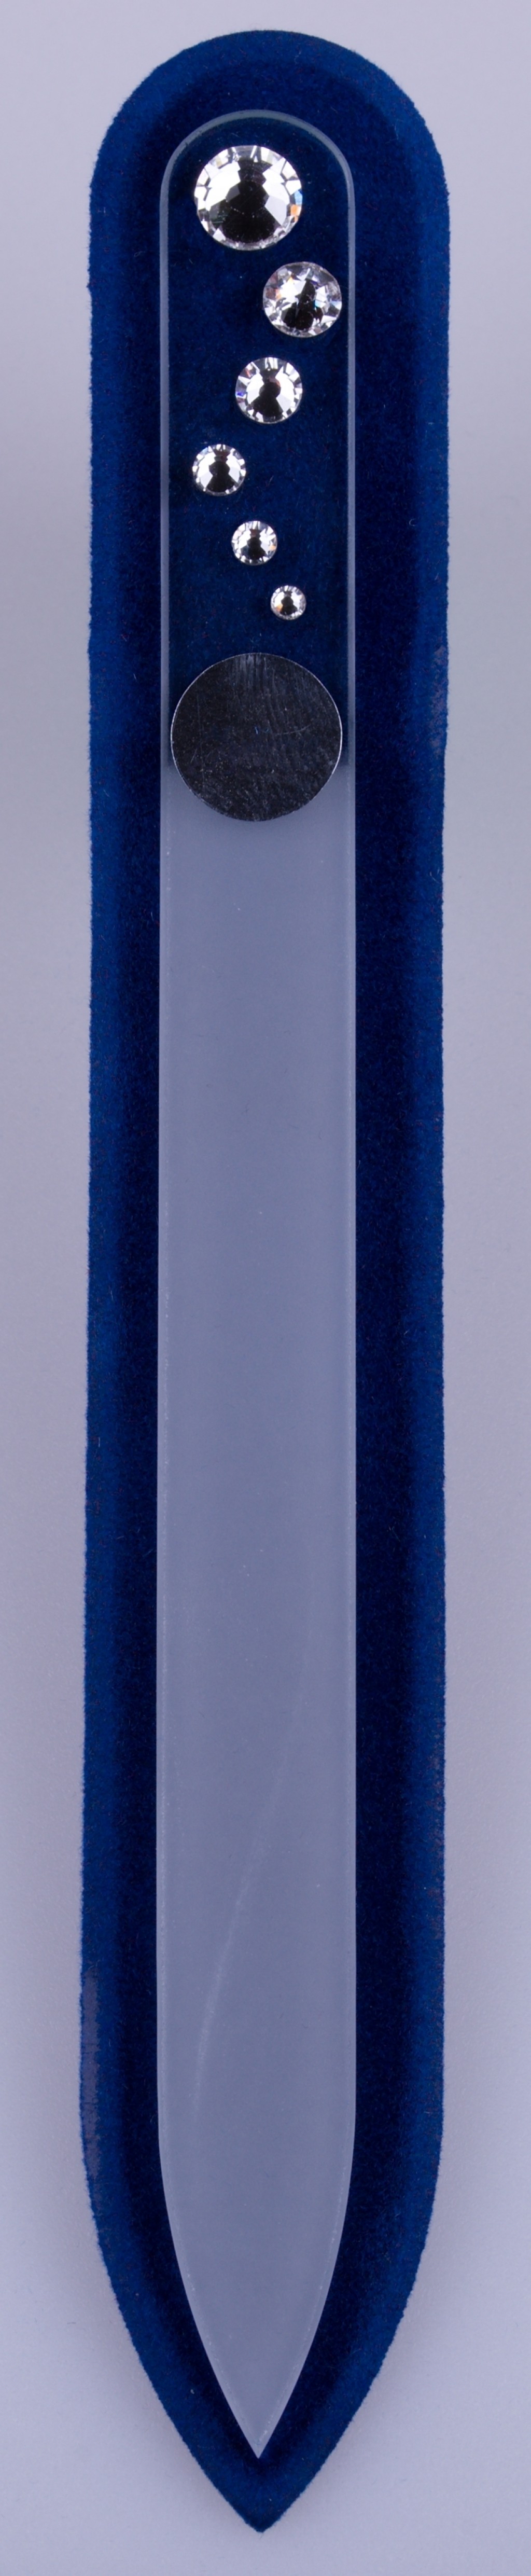 Skleněný pilník Mega červ - různé barevné kombinace